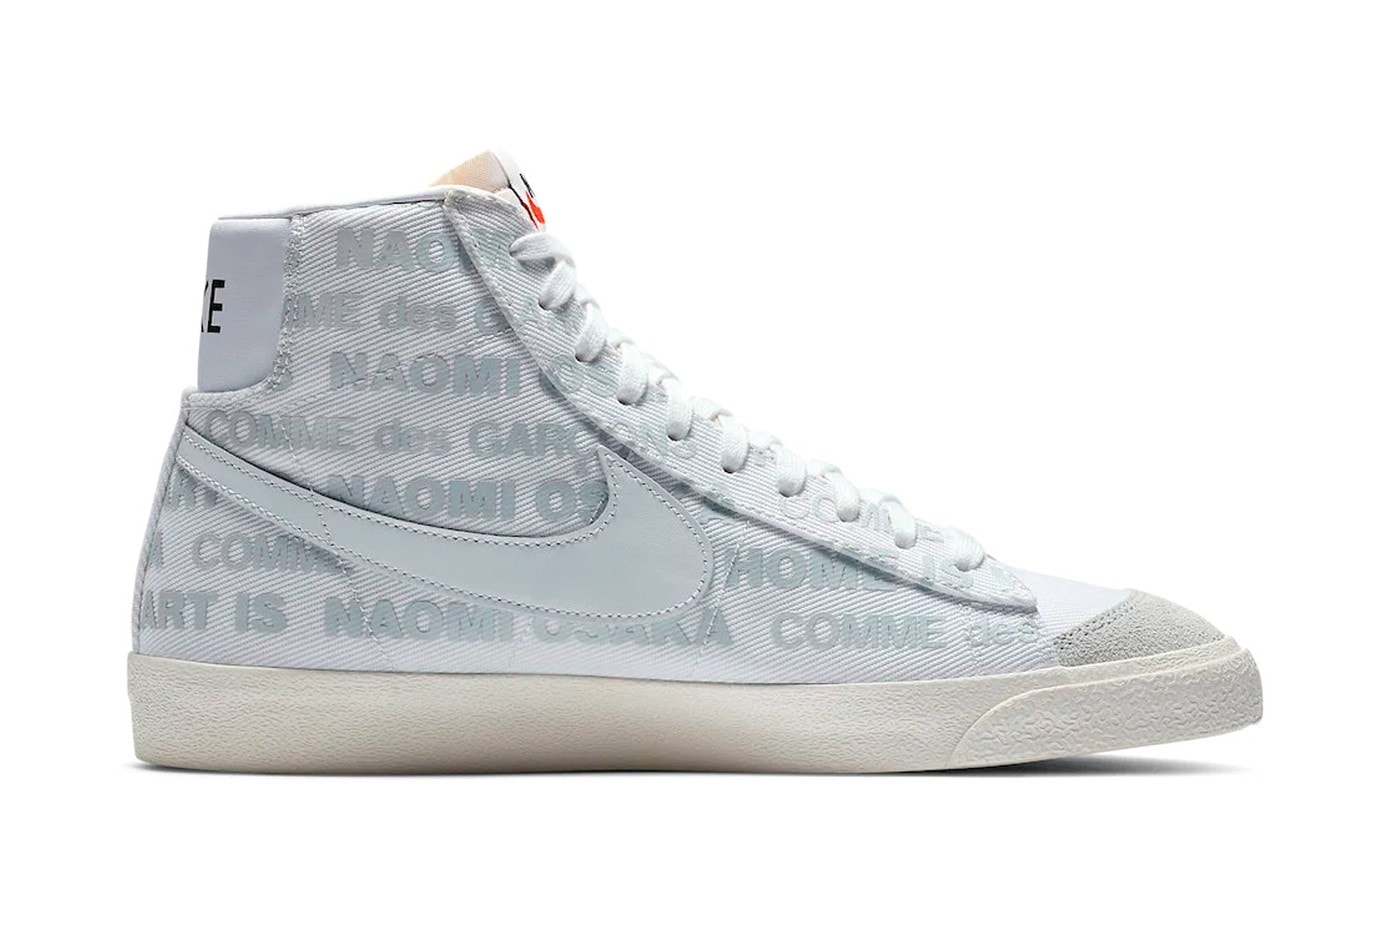 大坂直美專屬 COMME des GARÇONS x Nike Blazer Mid 聯乘鞋款官方圖輯發佈